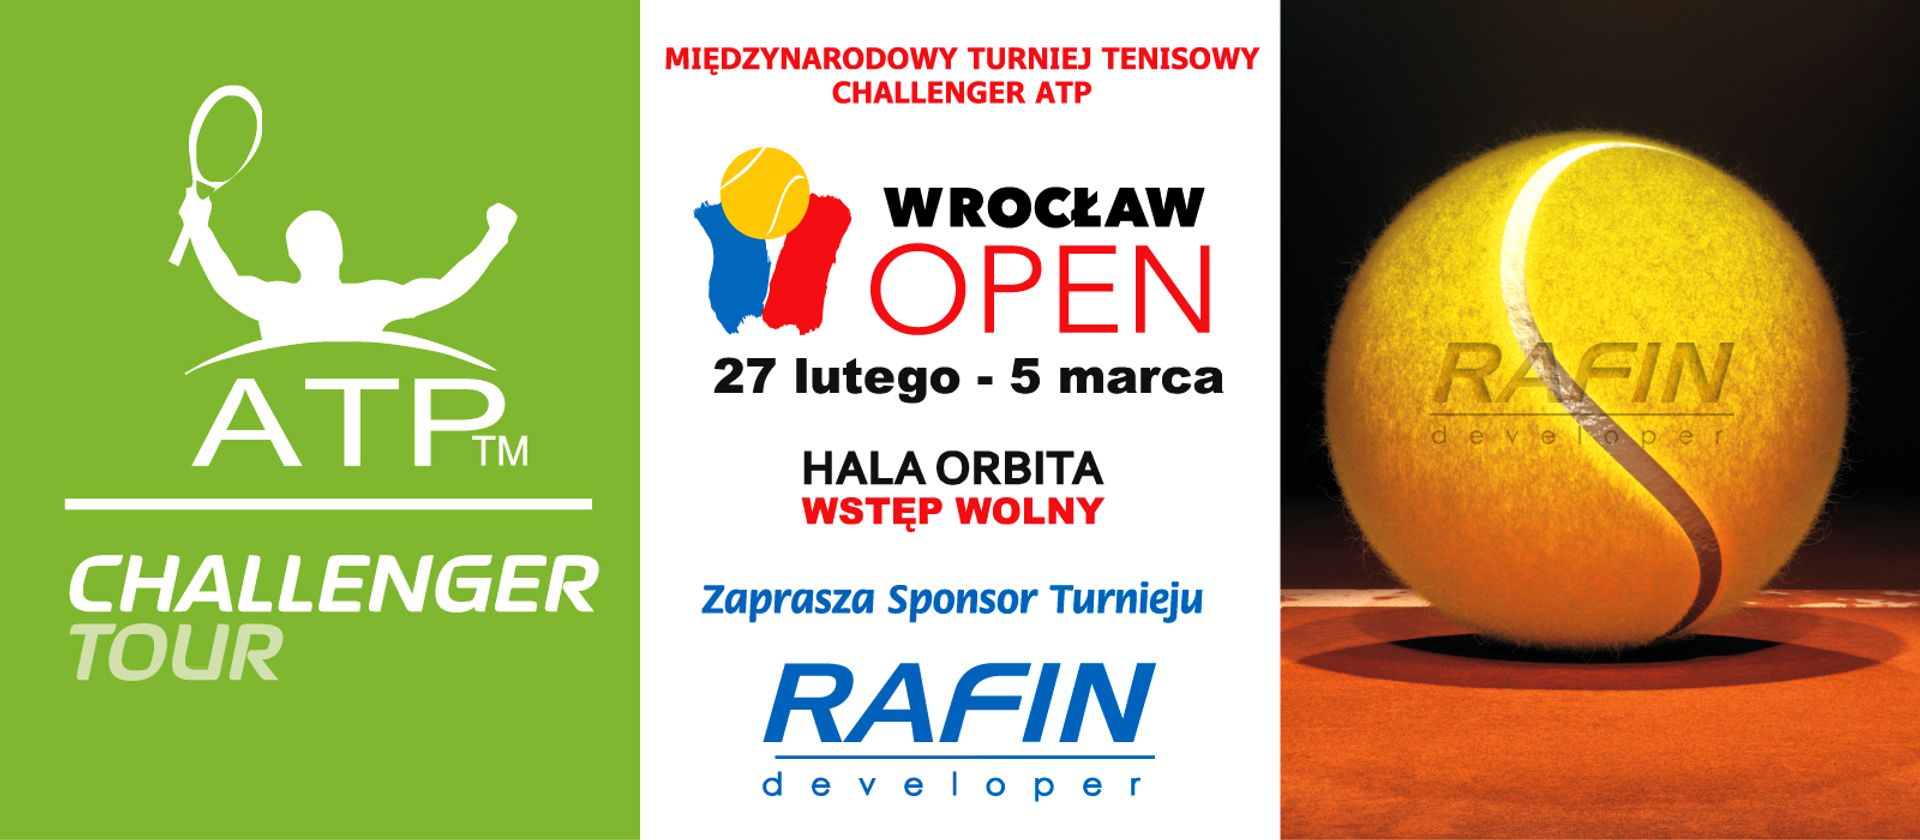  Wrocław Open 2017 już się rozpoczął! Rafin sponsoruje wielkie tenisowe rozgrywki!